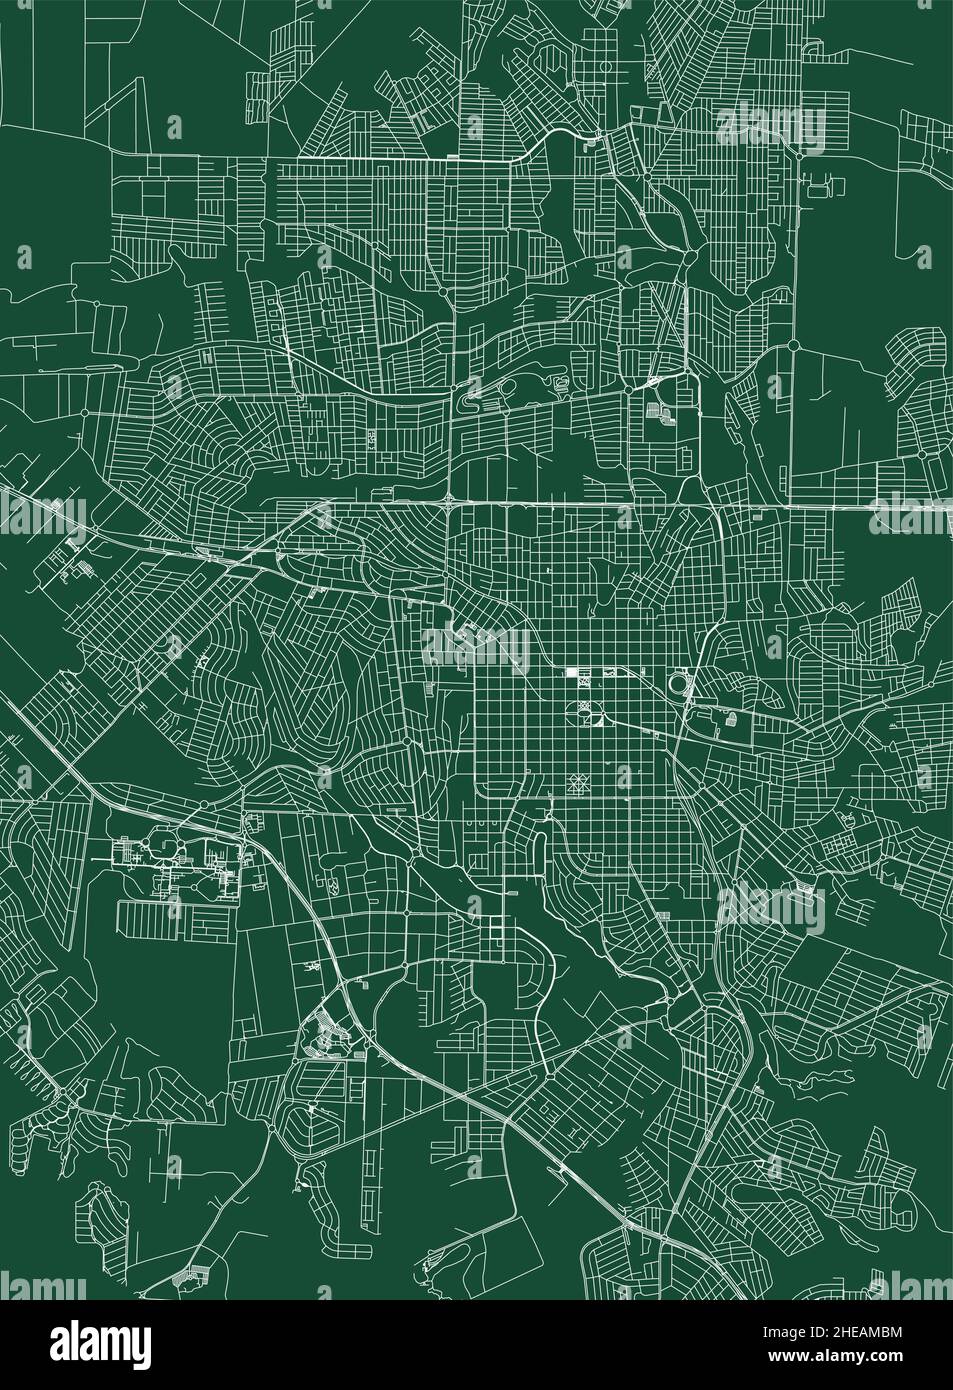 Londrina Stadt Brasilien Gemeinde Vektorkarte. Grüne Straßenkarte, Gemeindegebiet, weiße Linien. Städtisches Skyline-Panorama für den Tourismus. Stock Vektor